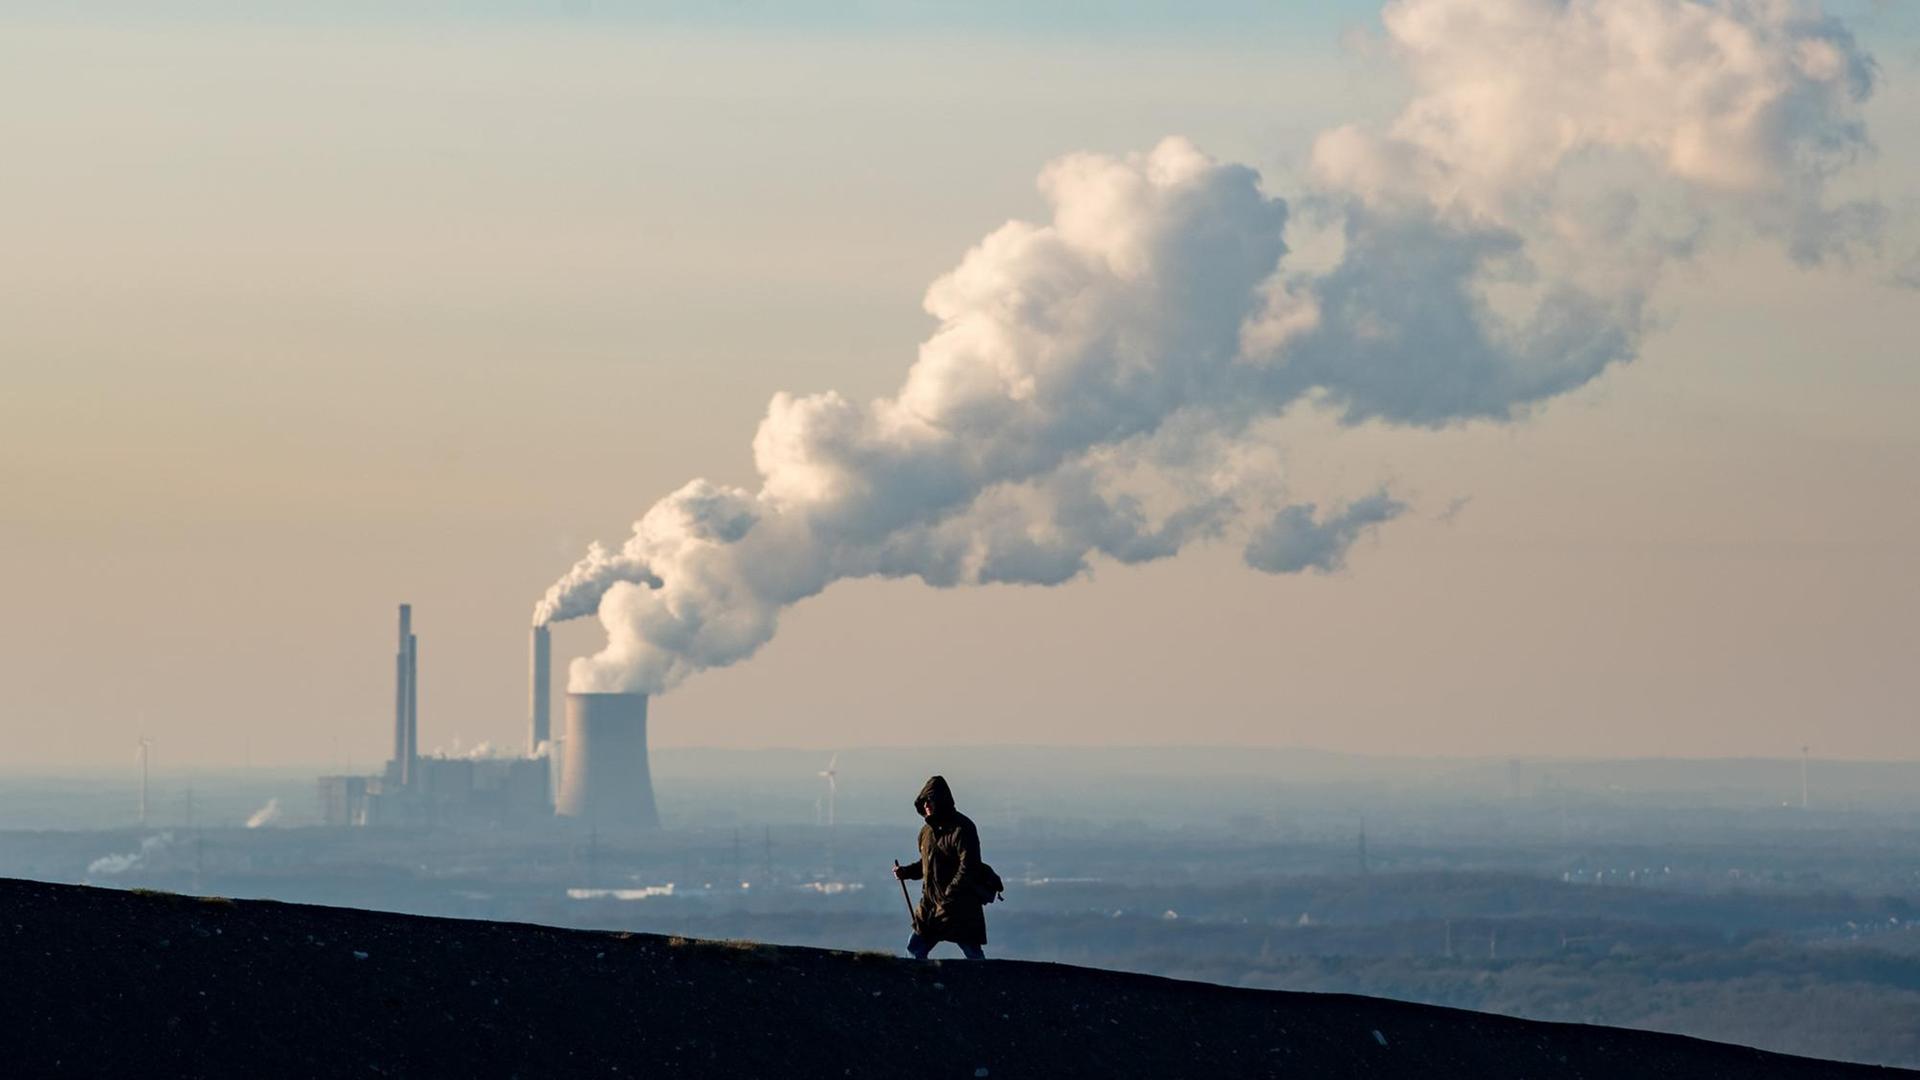 Rauch und Dampf steigen aus einem Kohlekraftweg in Oberhausen auf, im Vordergrund geht ein Mann.